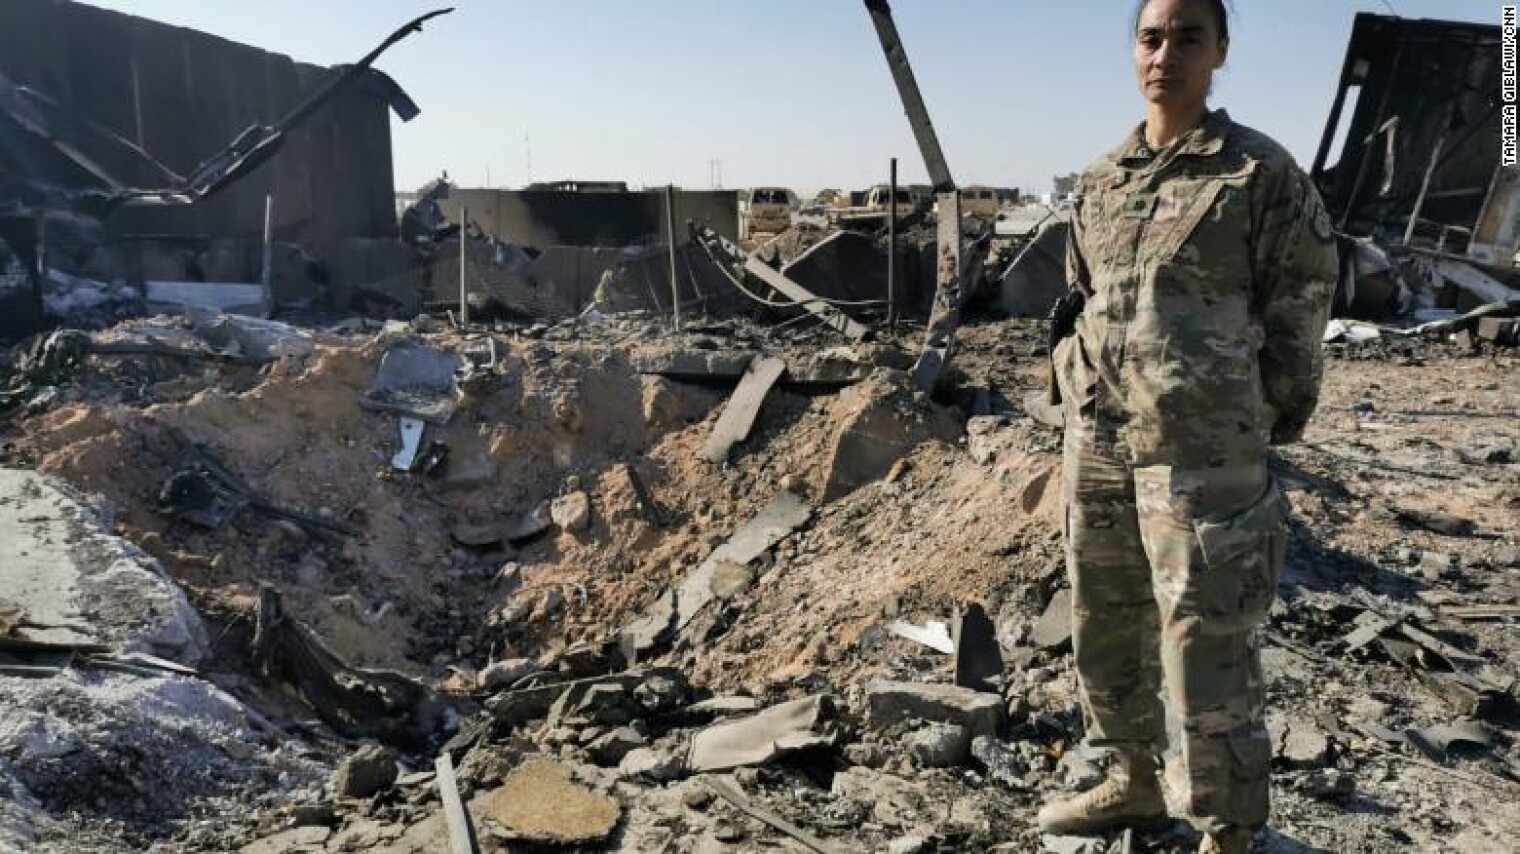 Нападение на америку. Ирак Эль-Каим американская Военная база. Обстрел американской базы в Ираке в 2003.